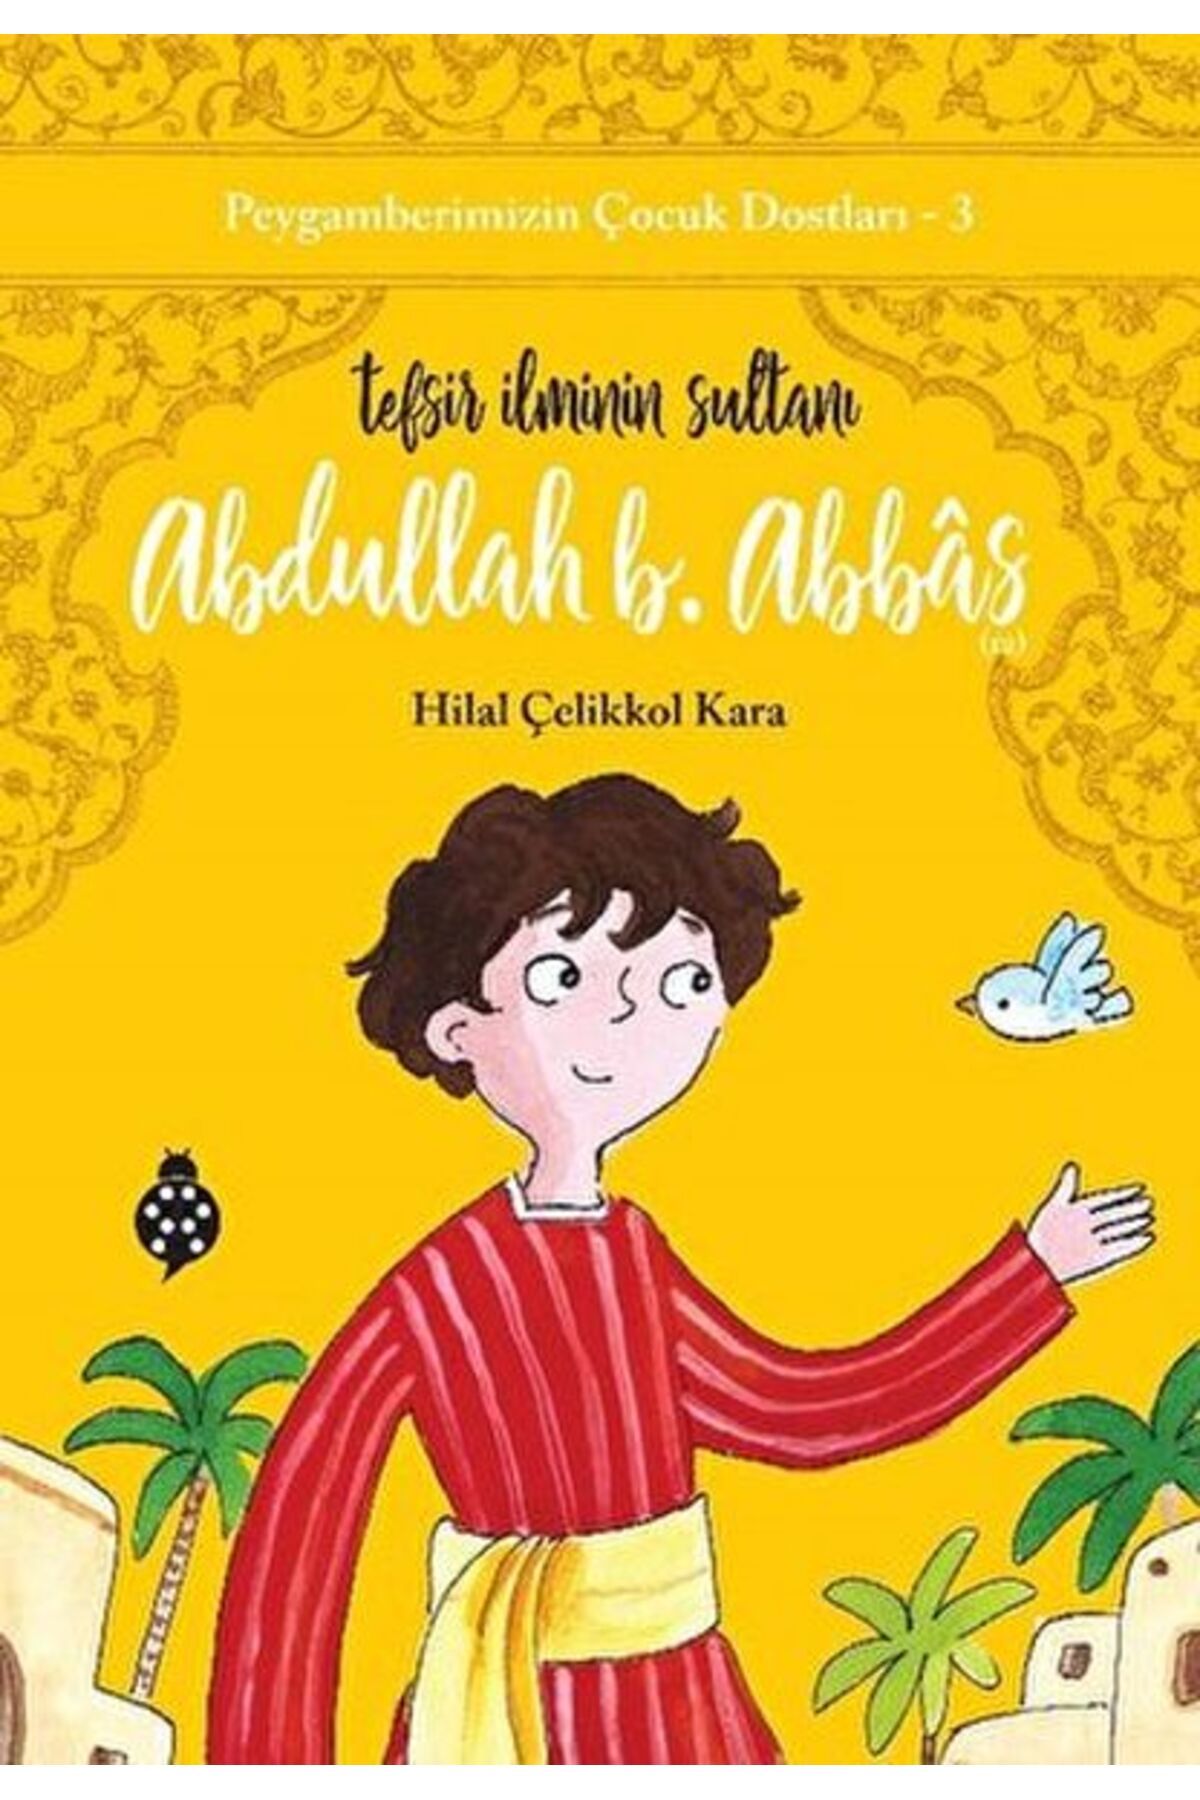 Uğurböceği Yayınları Peygamberimizin Çocuk Dostları-3-abdullah B. Abbâs-tefsir Ilminin Sultanı